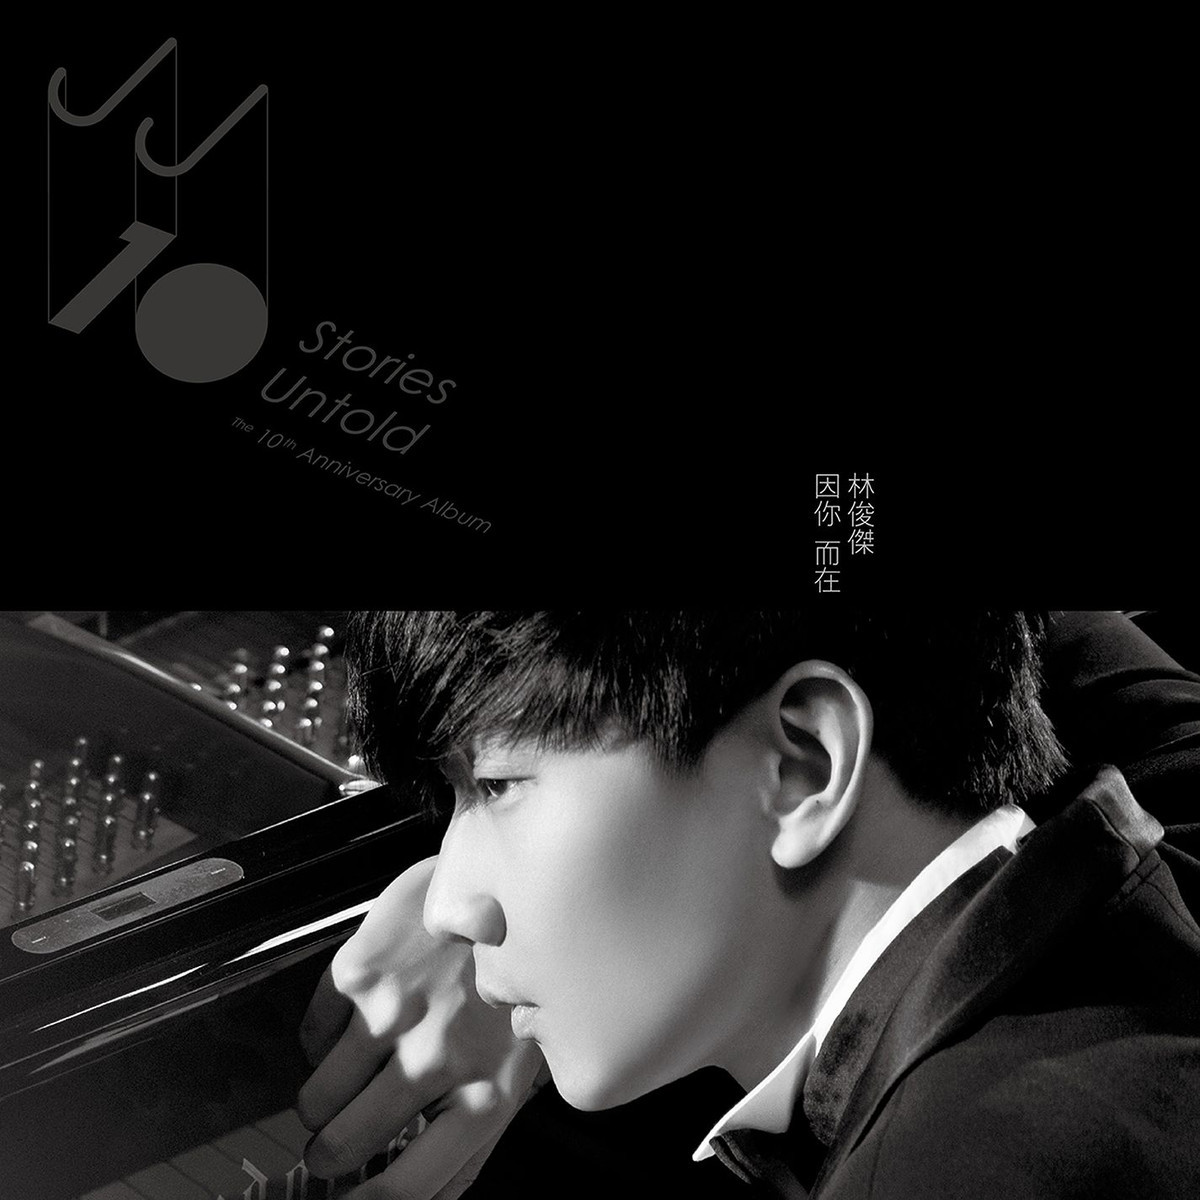 Download Kpop Jpop Cpop